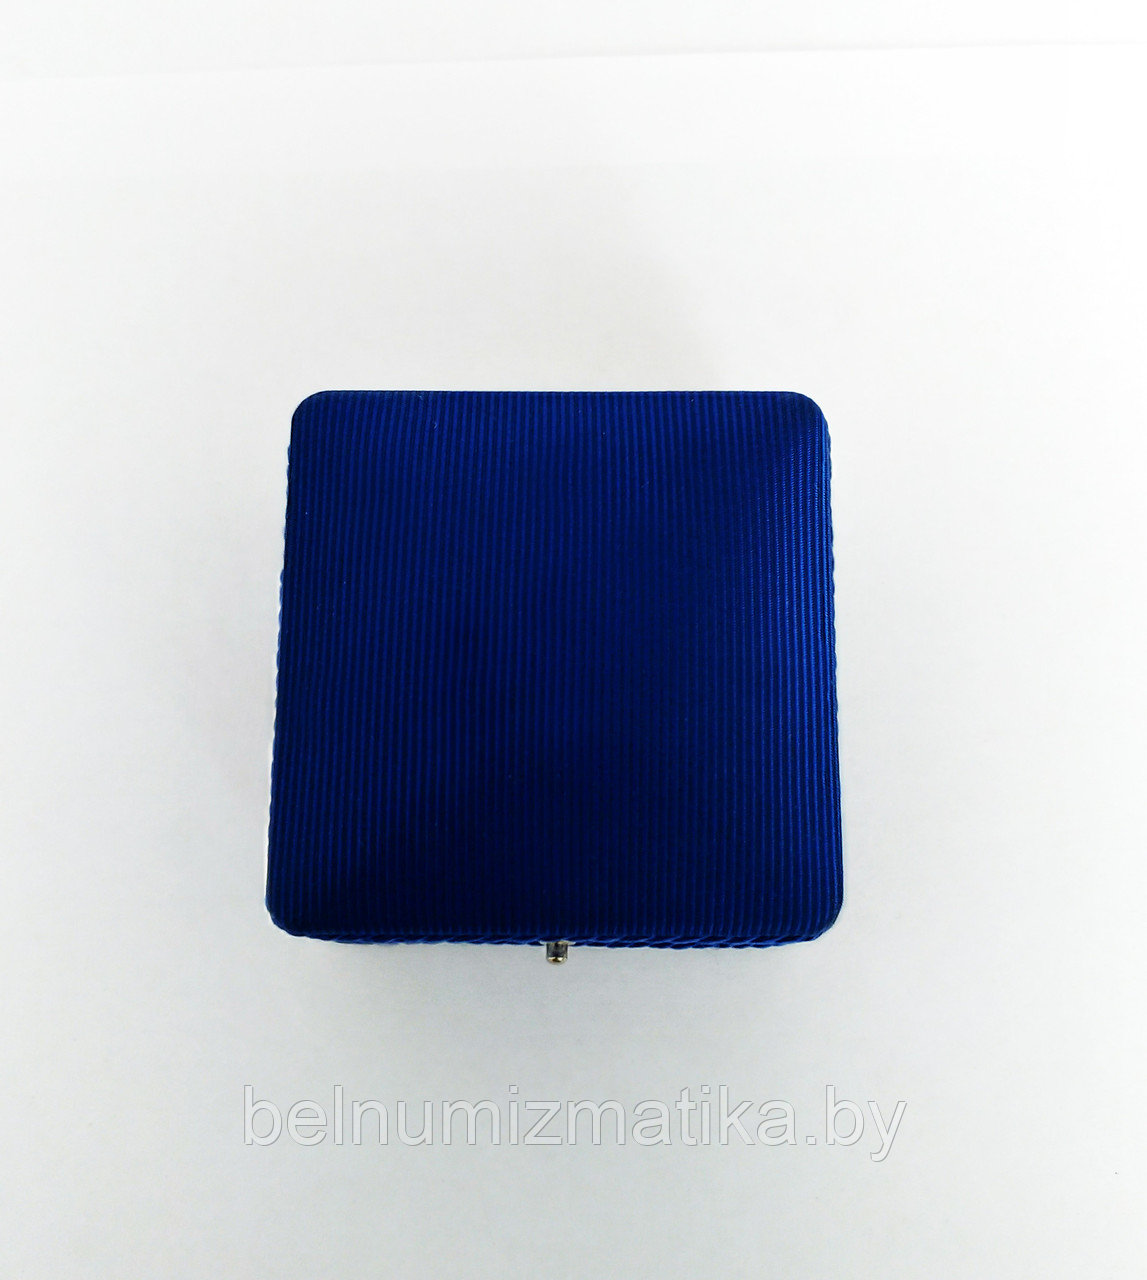 Футляр для монеты Ø 30.00 mm синий оббитый тканью